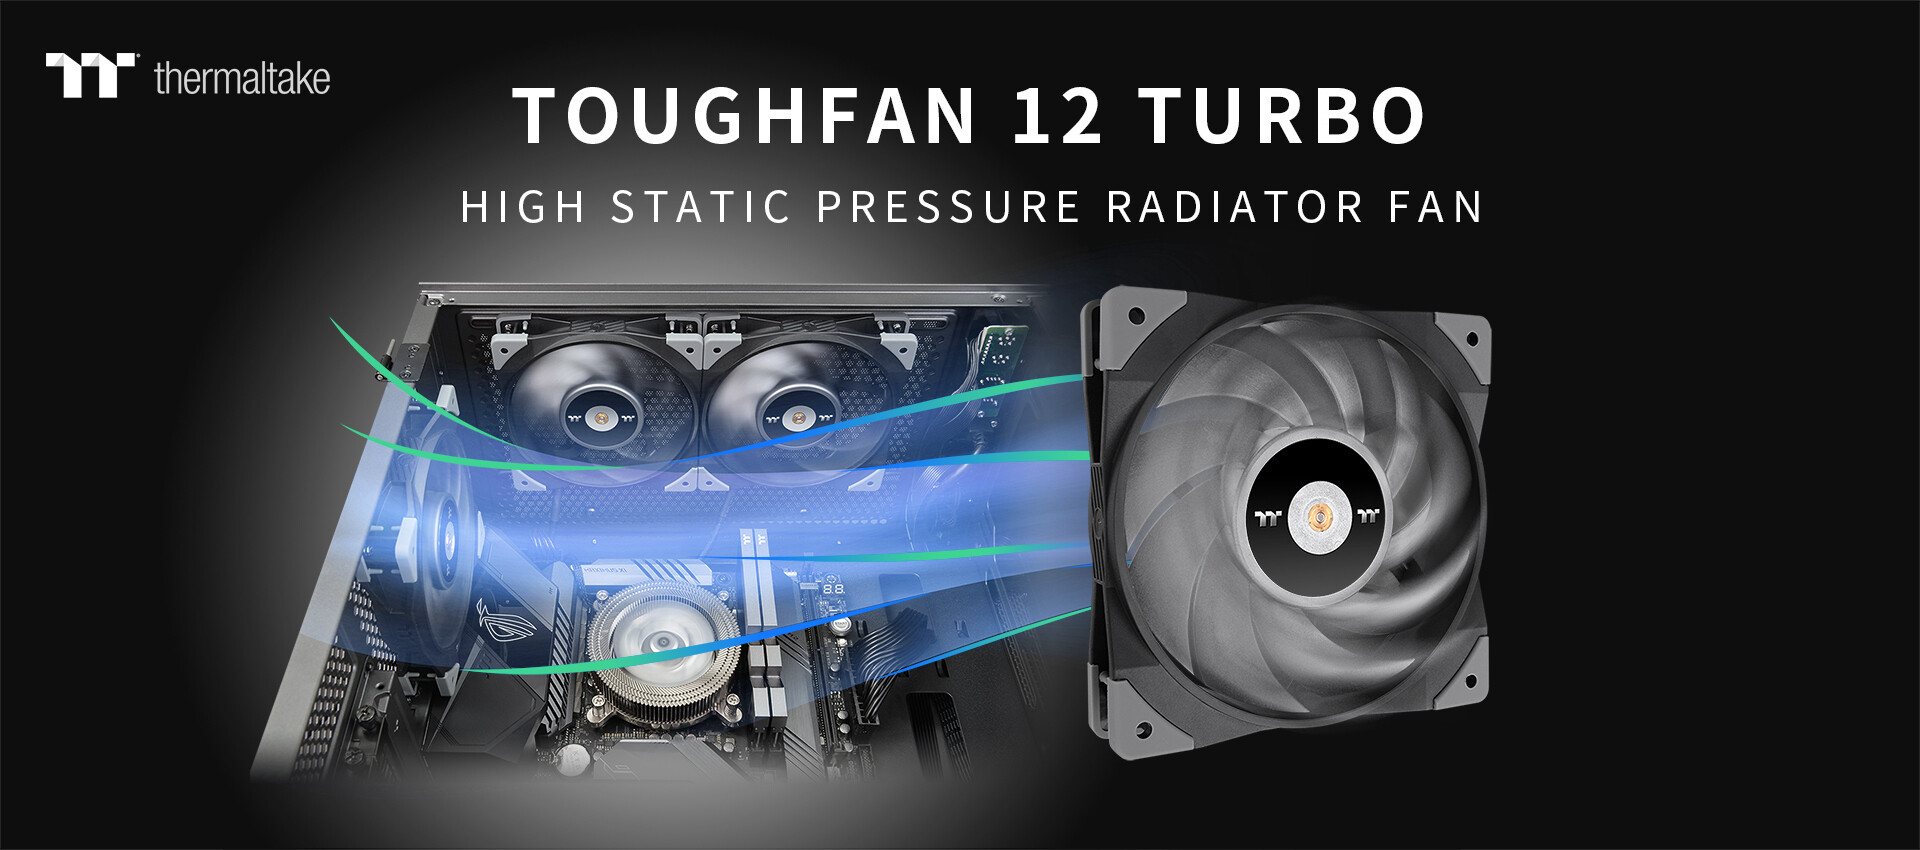 Thermaltake推出TOUGHFAN 12 Turbo高静压散热器风扇教程